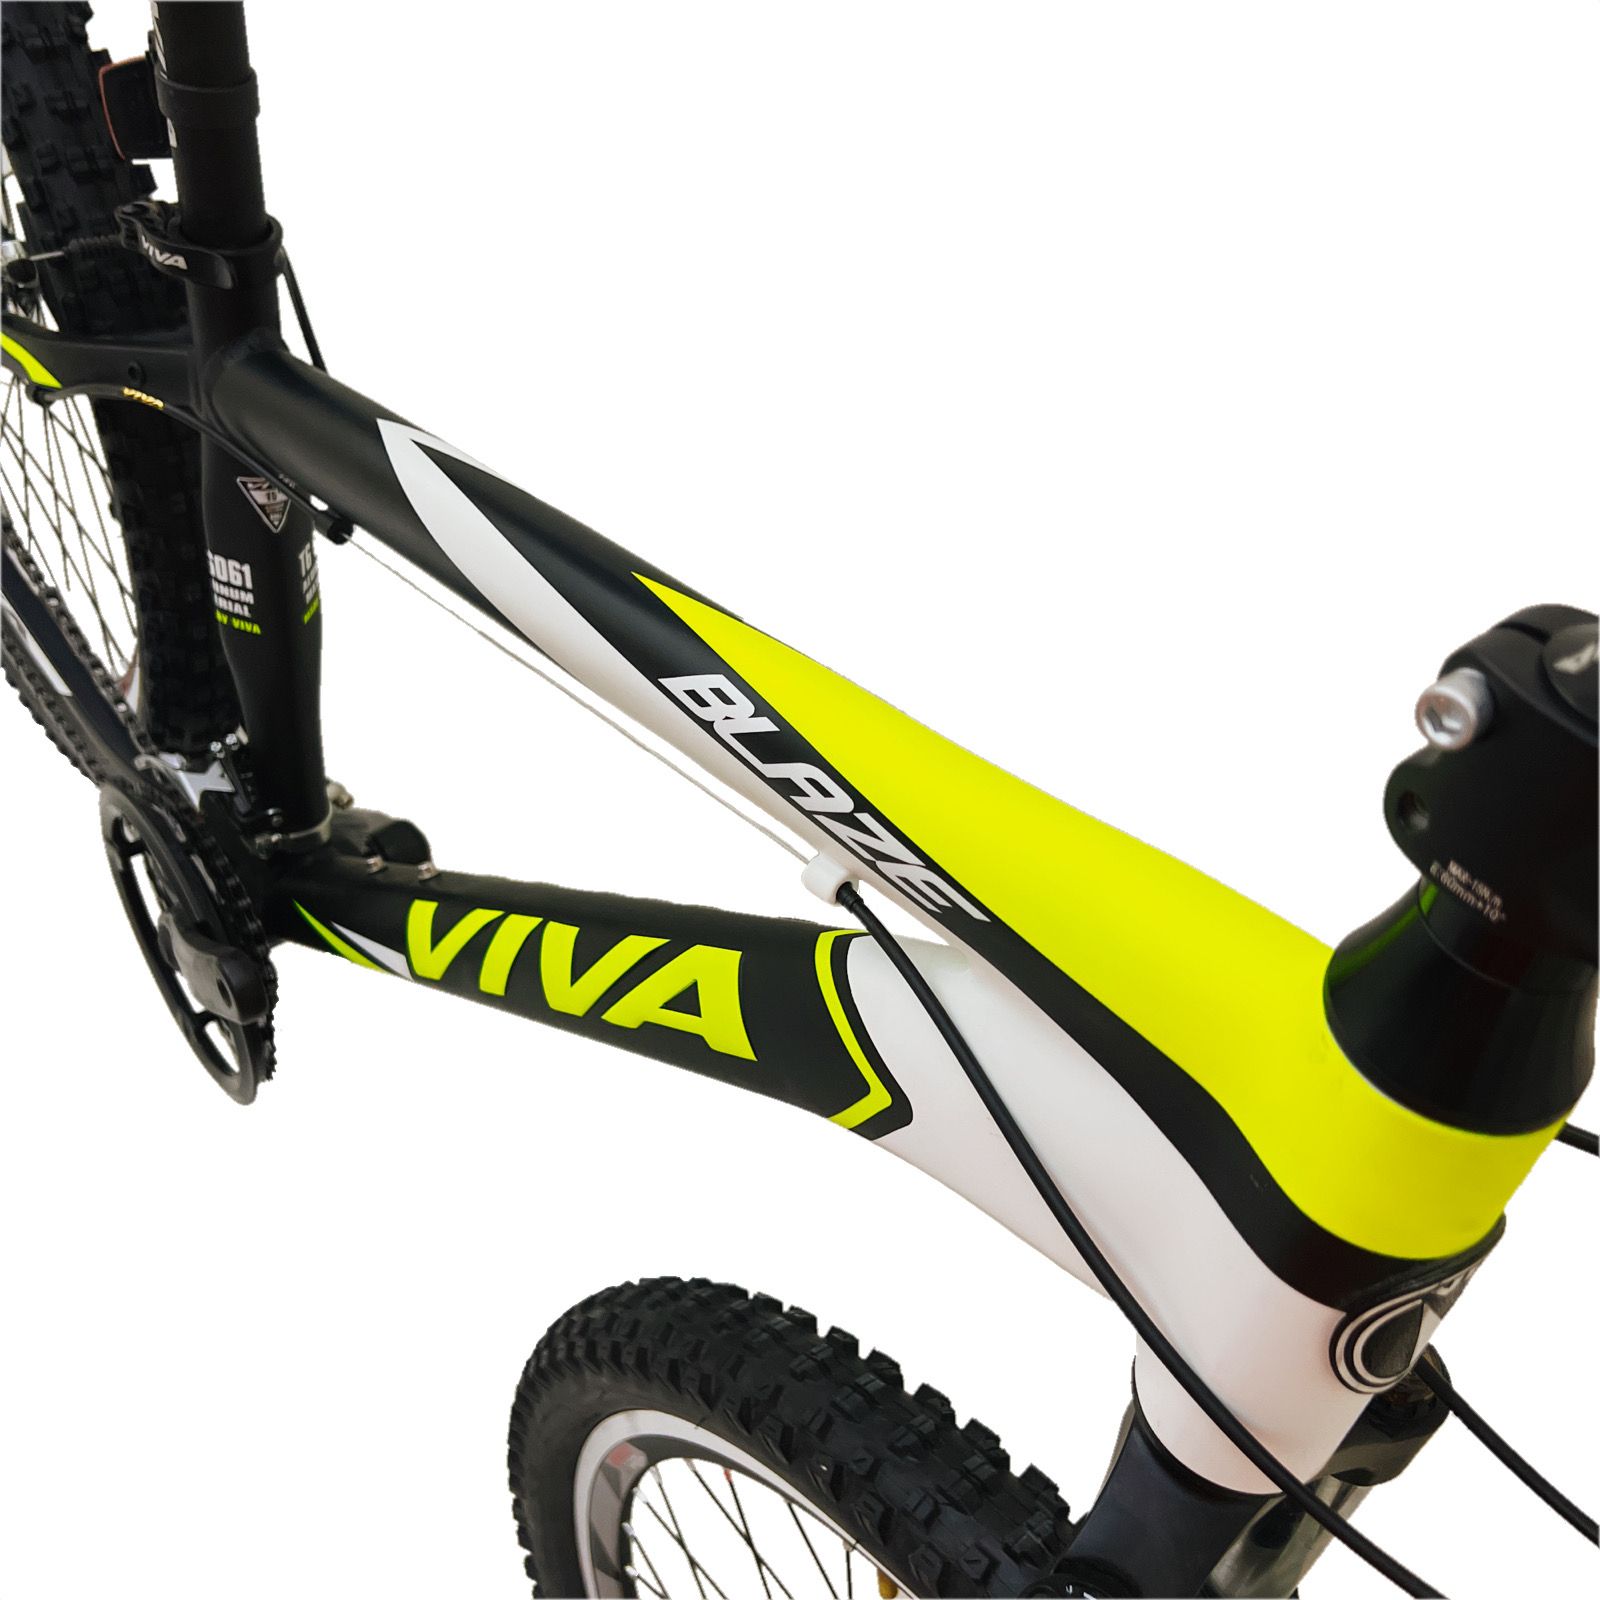 دوچرخه کوهستان ویوا مدل BLAZE کد 15 سایز 26 -  - 13